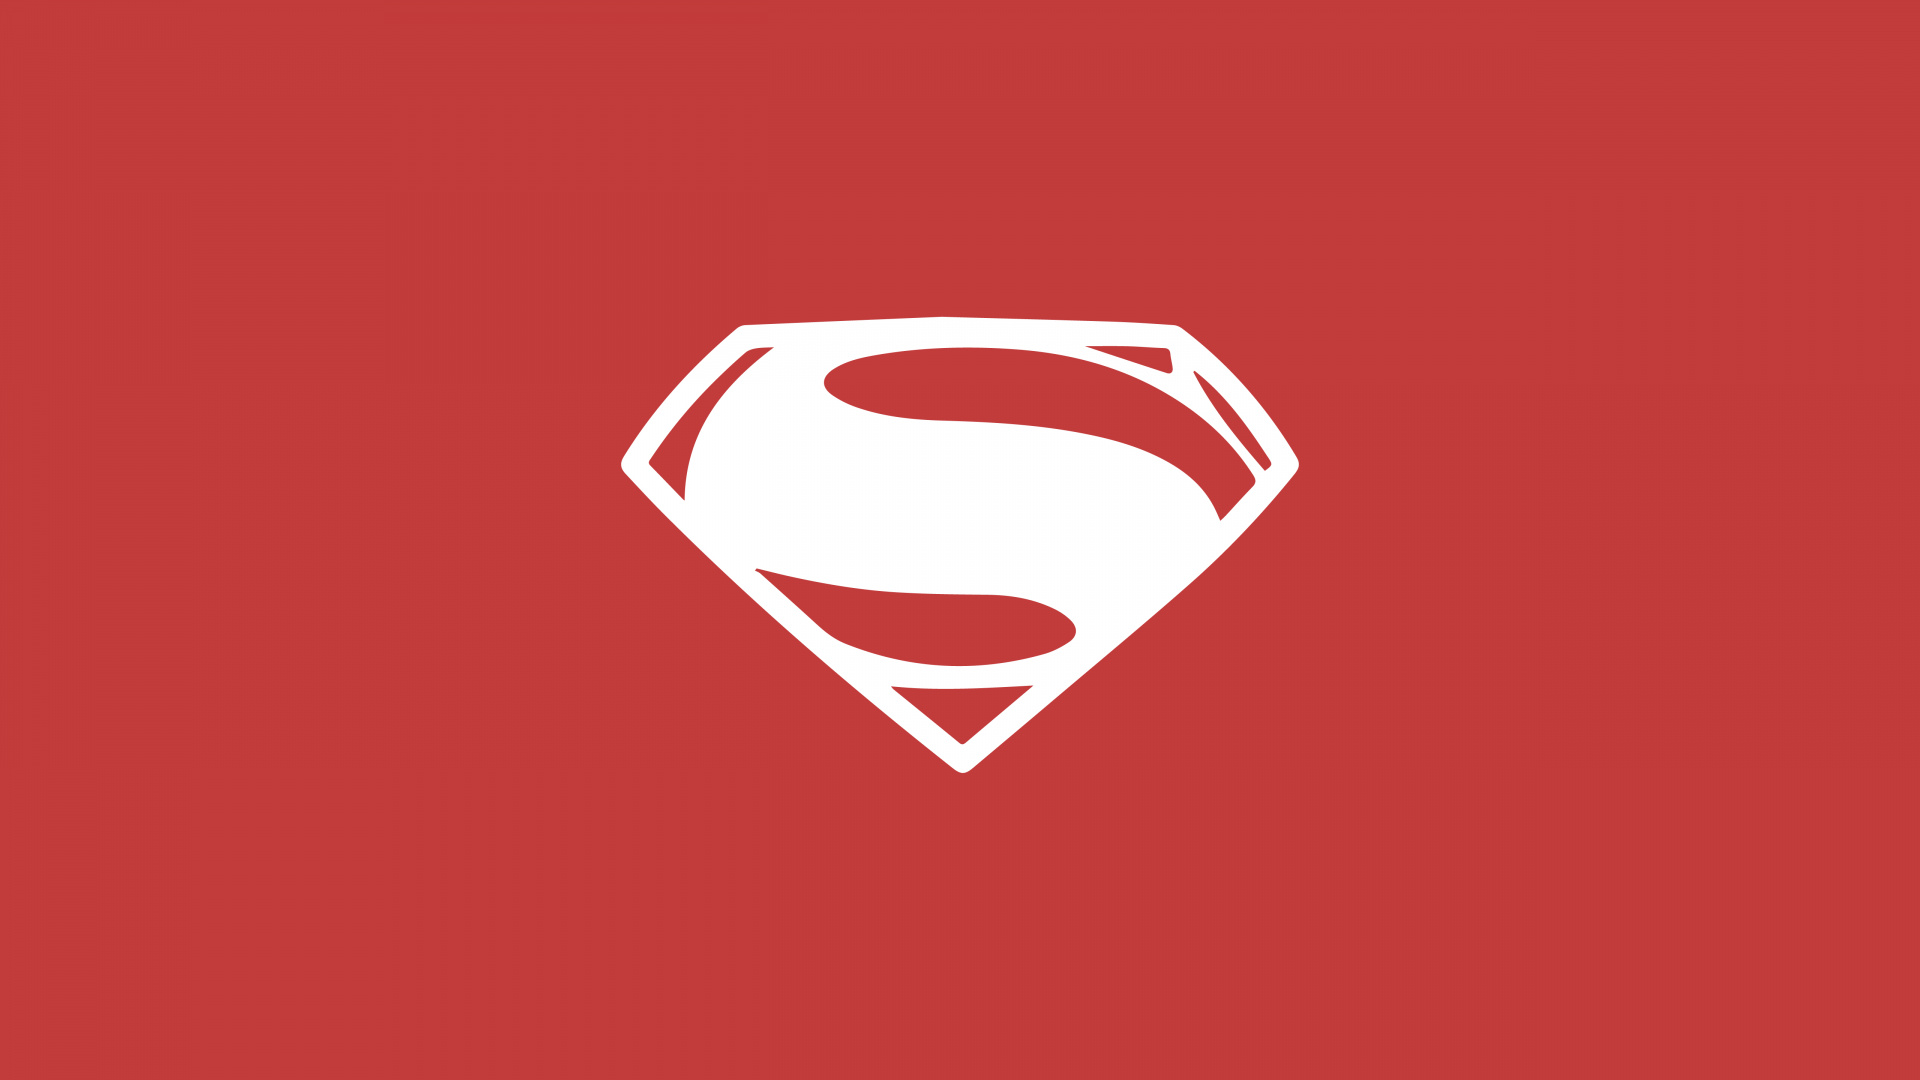 超人的标志, 红色的, 心脏, Dc漫画, 超级英雄 壁纸 1920x1080 允许